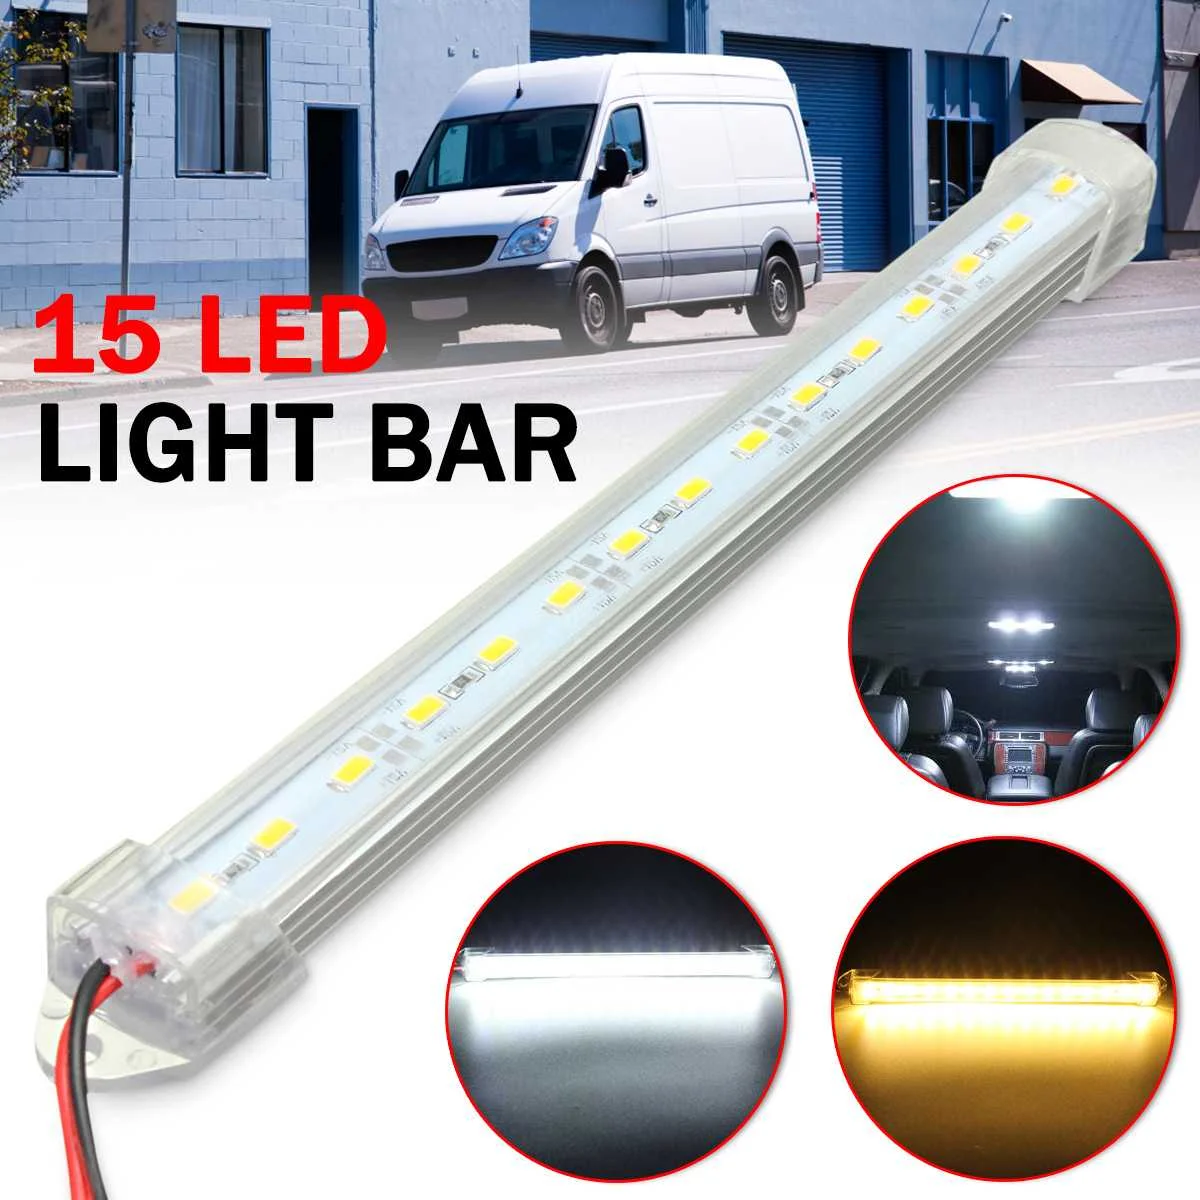 Details about   12PCS 12V LED Car Interior Blue Strip Lights Bar Lamp Car Van Boat Home US EBS 